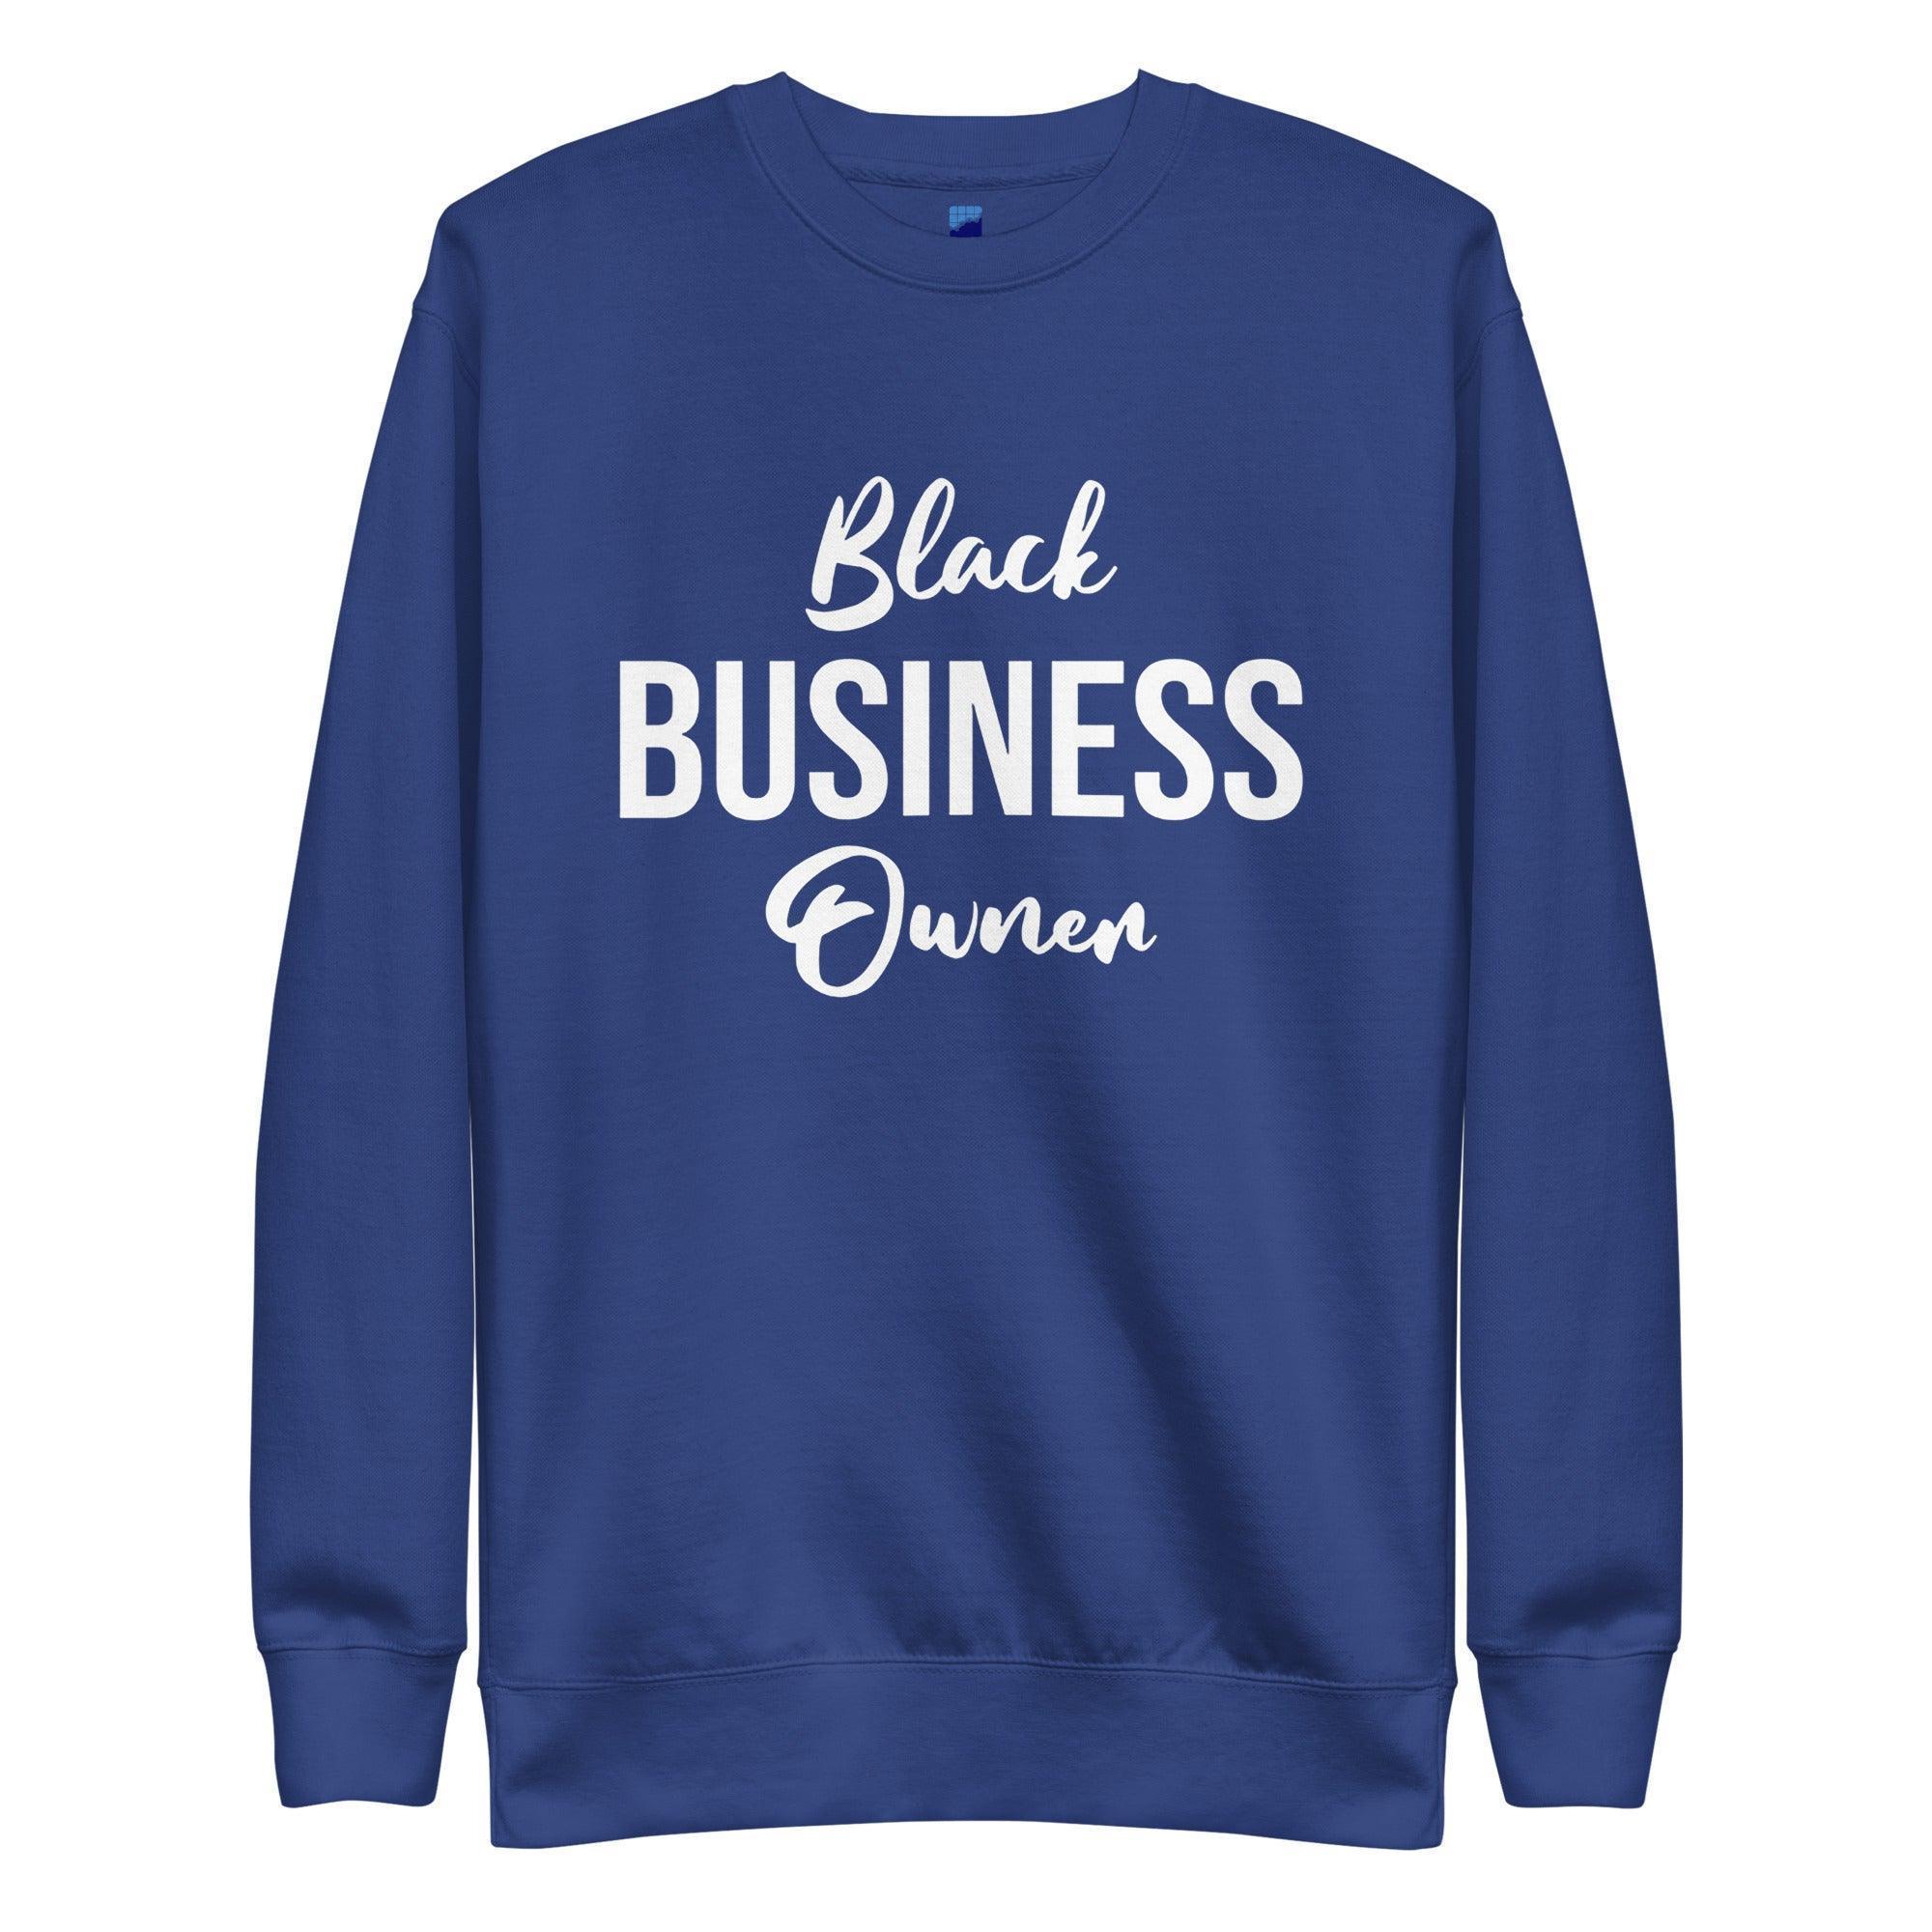 Black Business Owner Sweatshirt - InvestmenTees